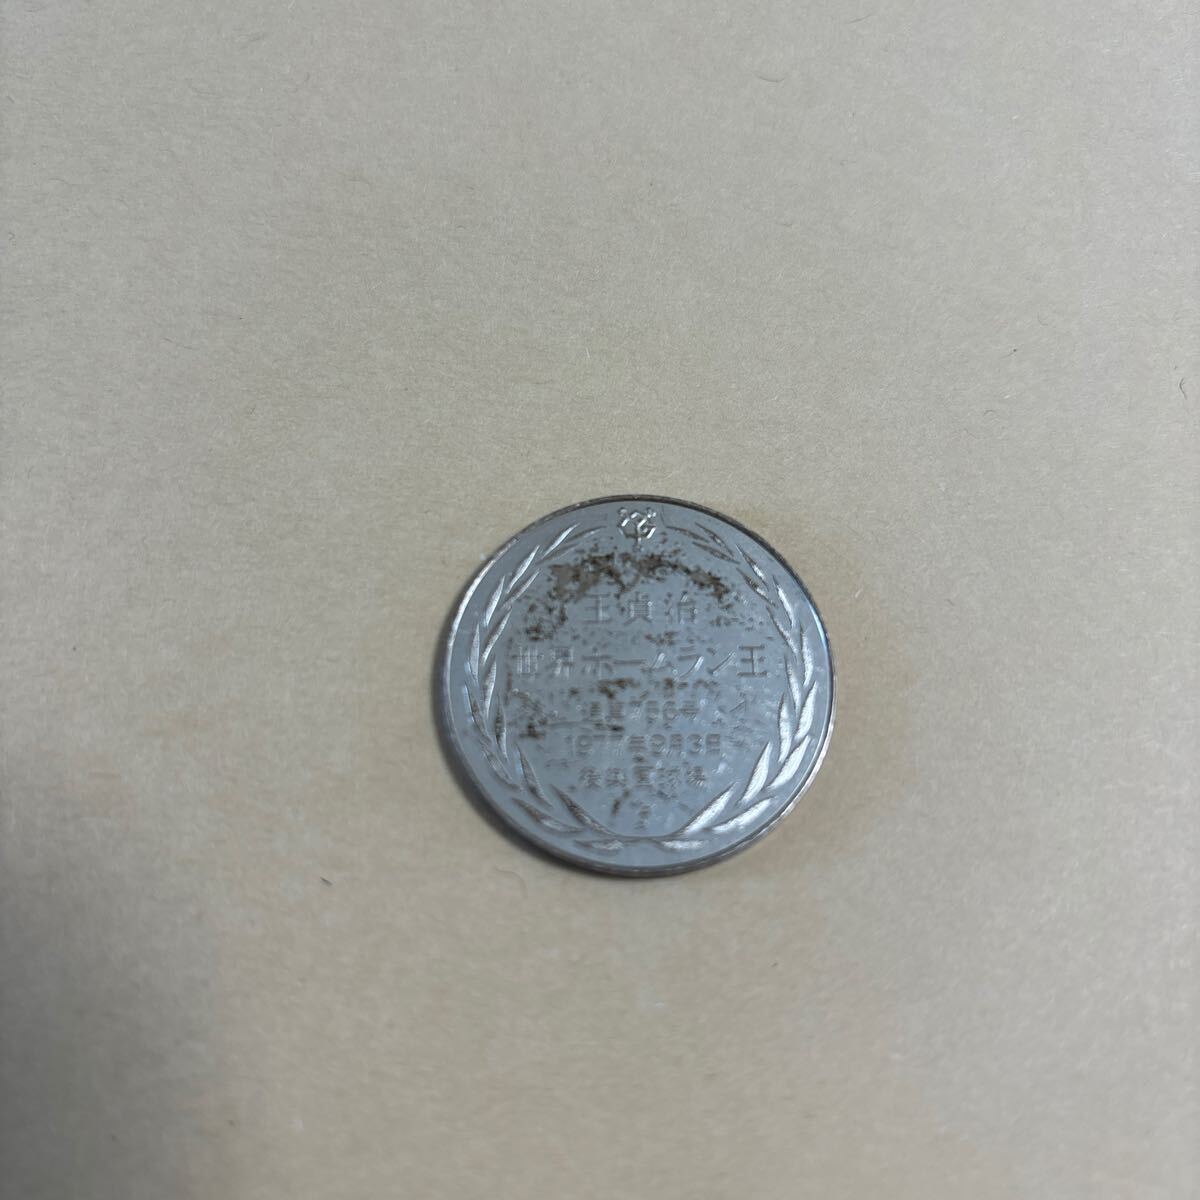 送料無料g22307 王貞治 世界ホームラン王 756号への道 メダル 読売巨人軍 コイン の画像2